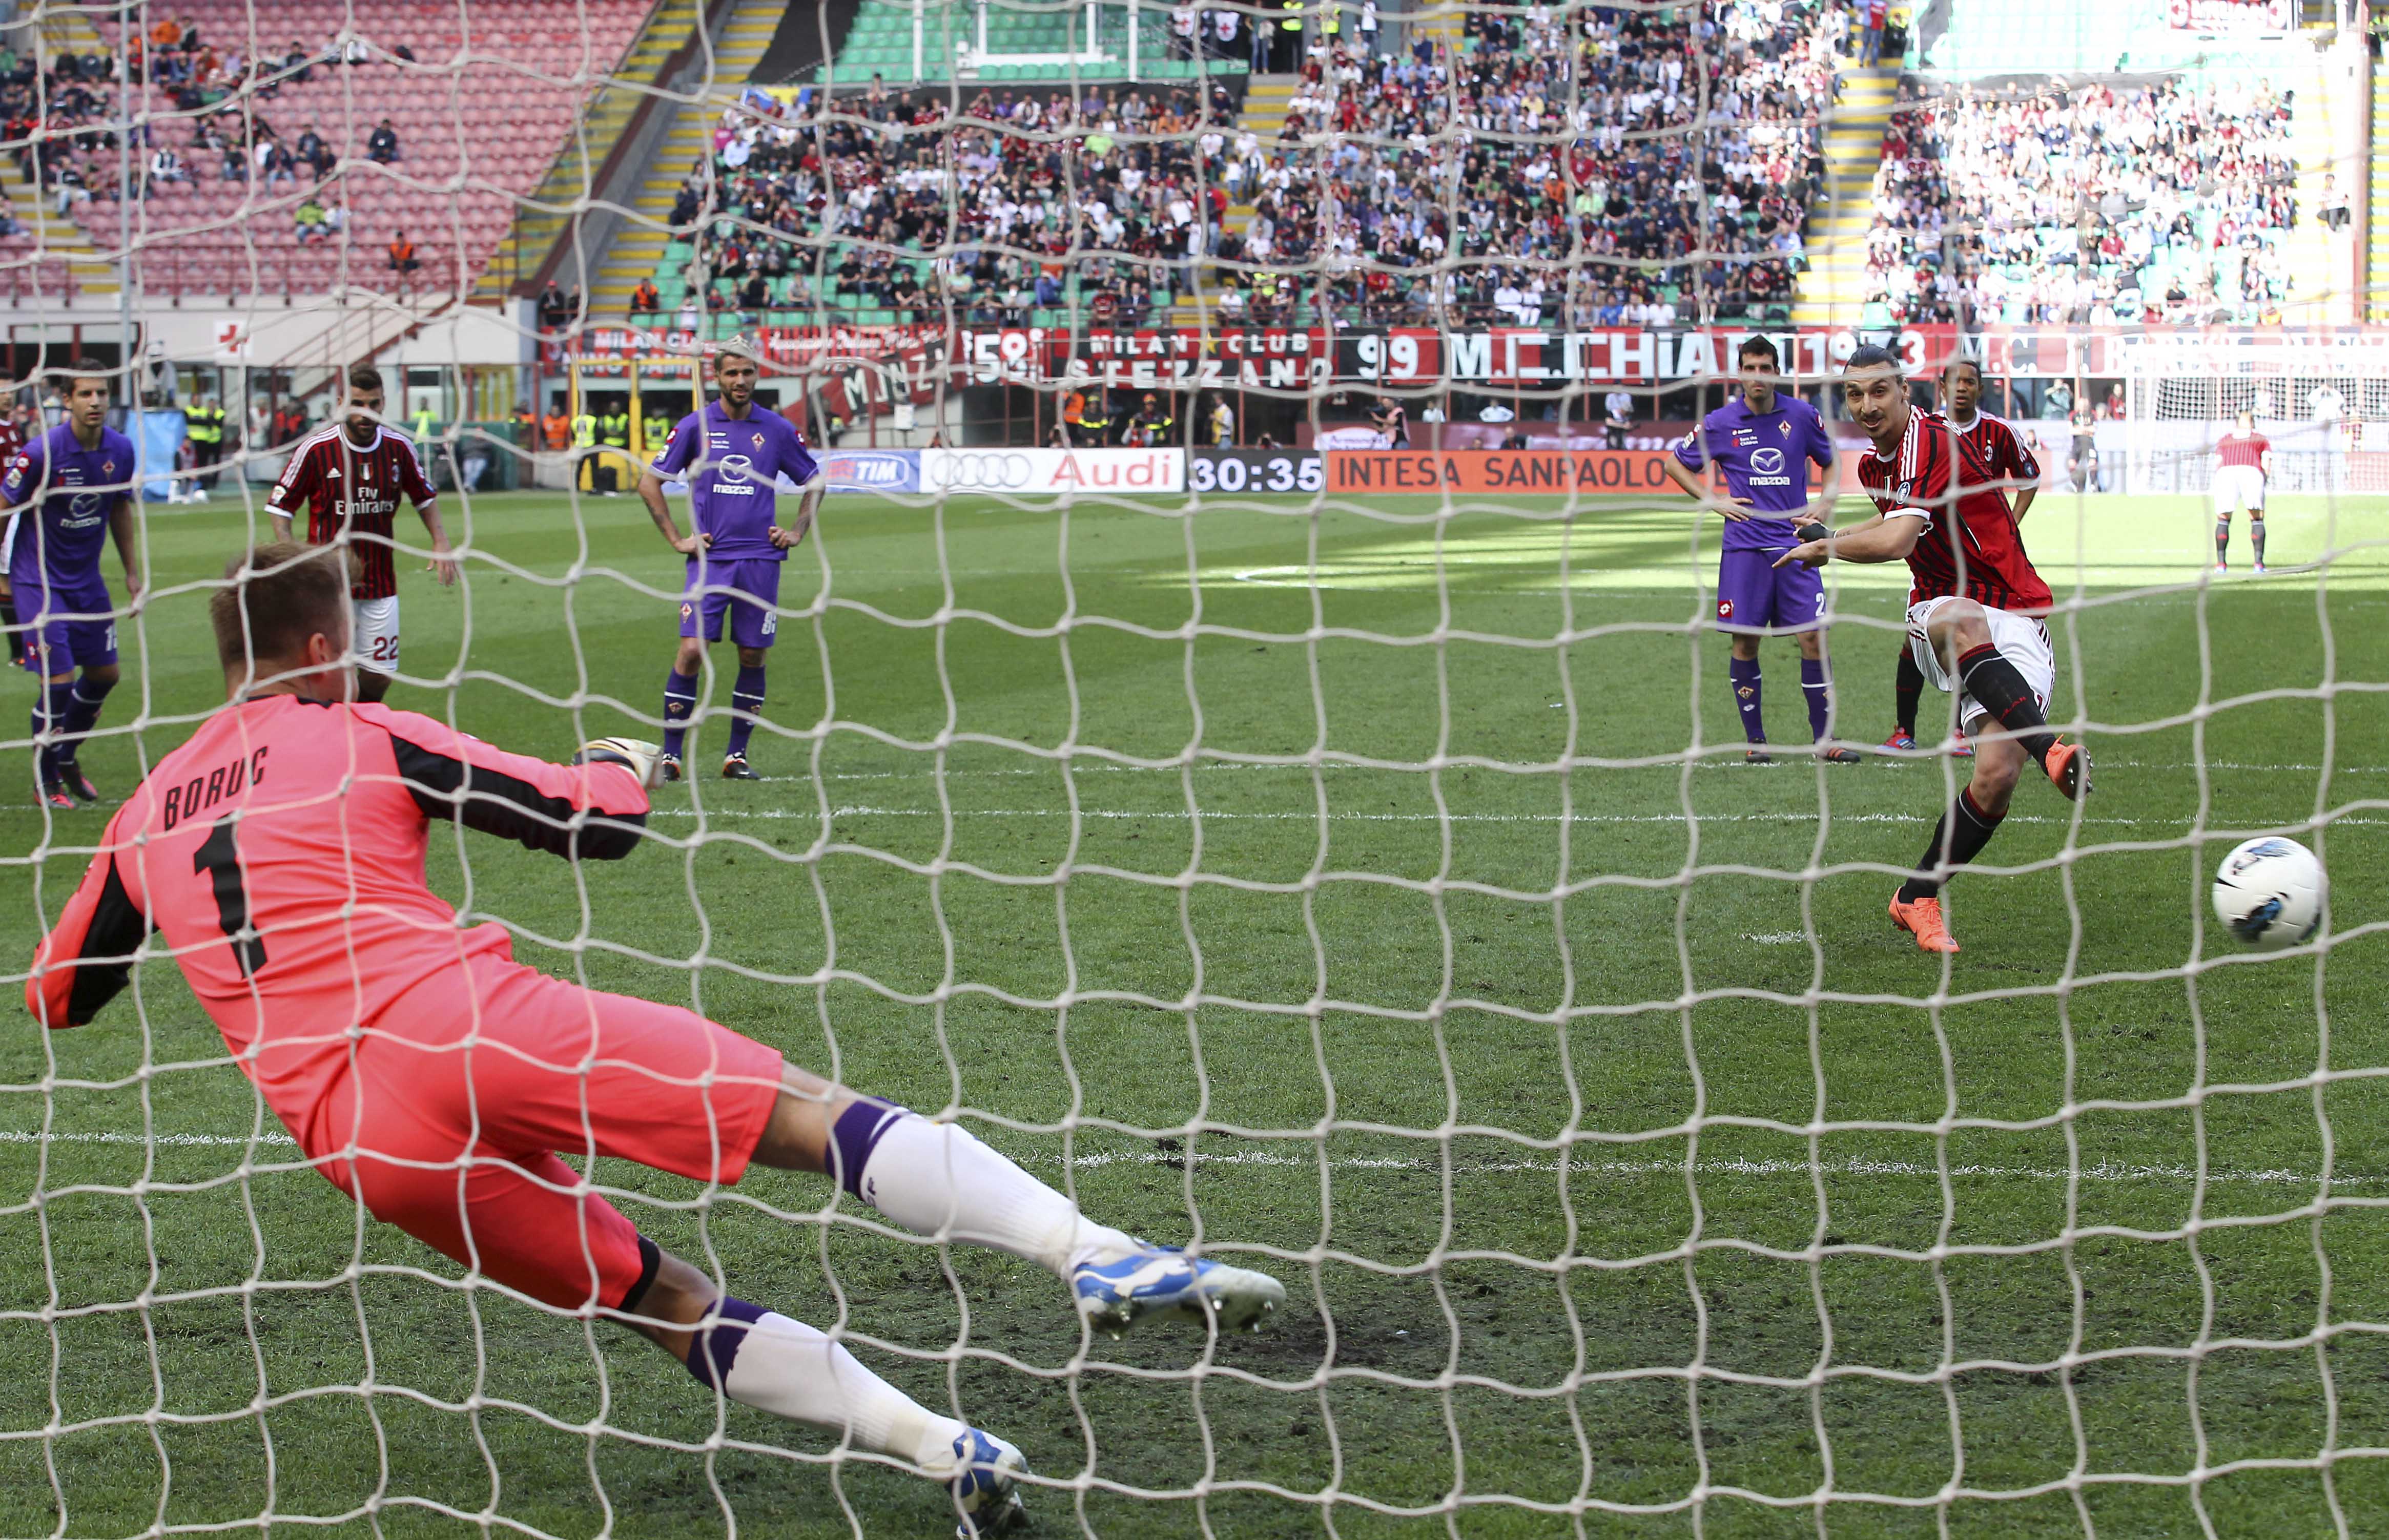 Fiorentina satte två mål i den andra halvleken och sänkte Milan.